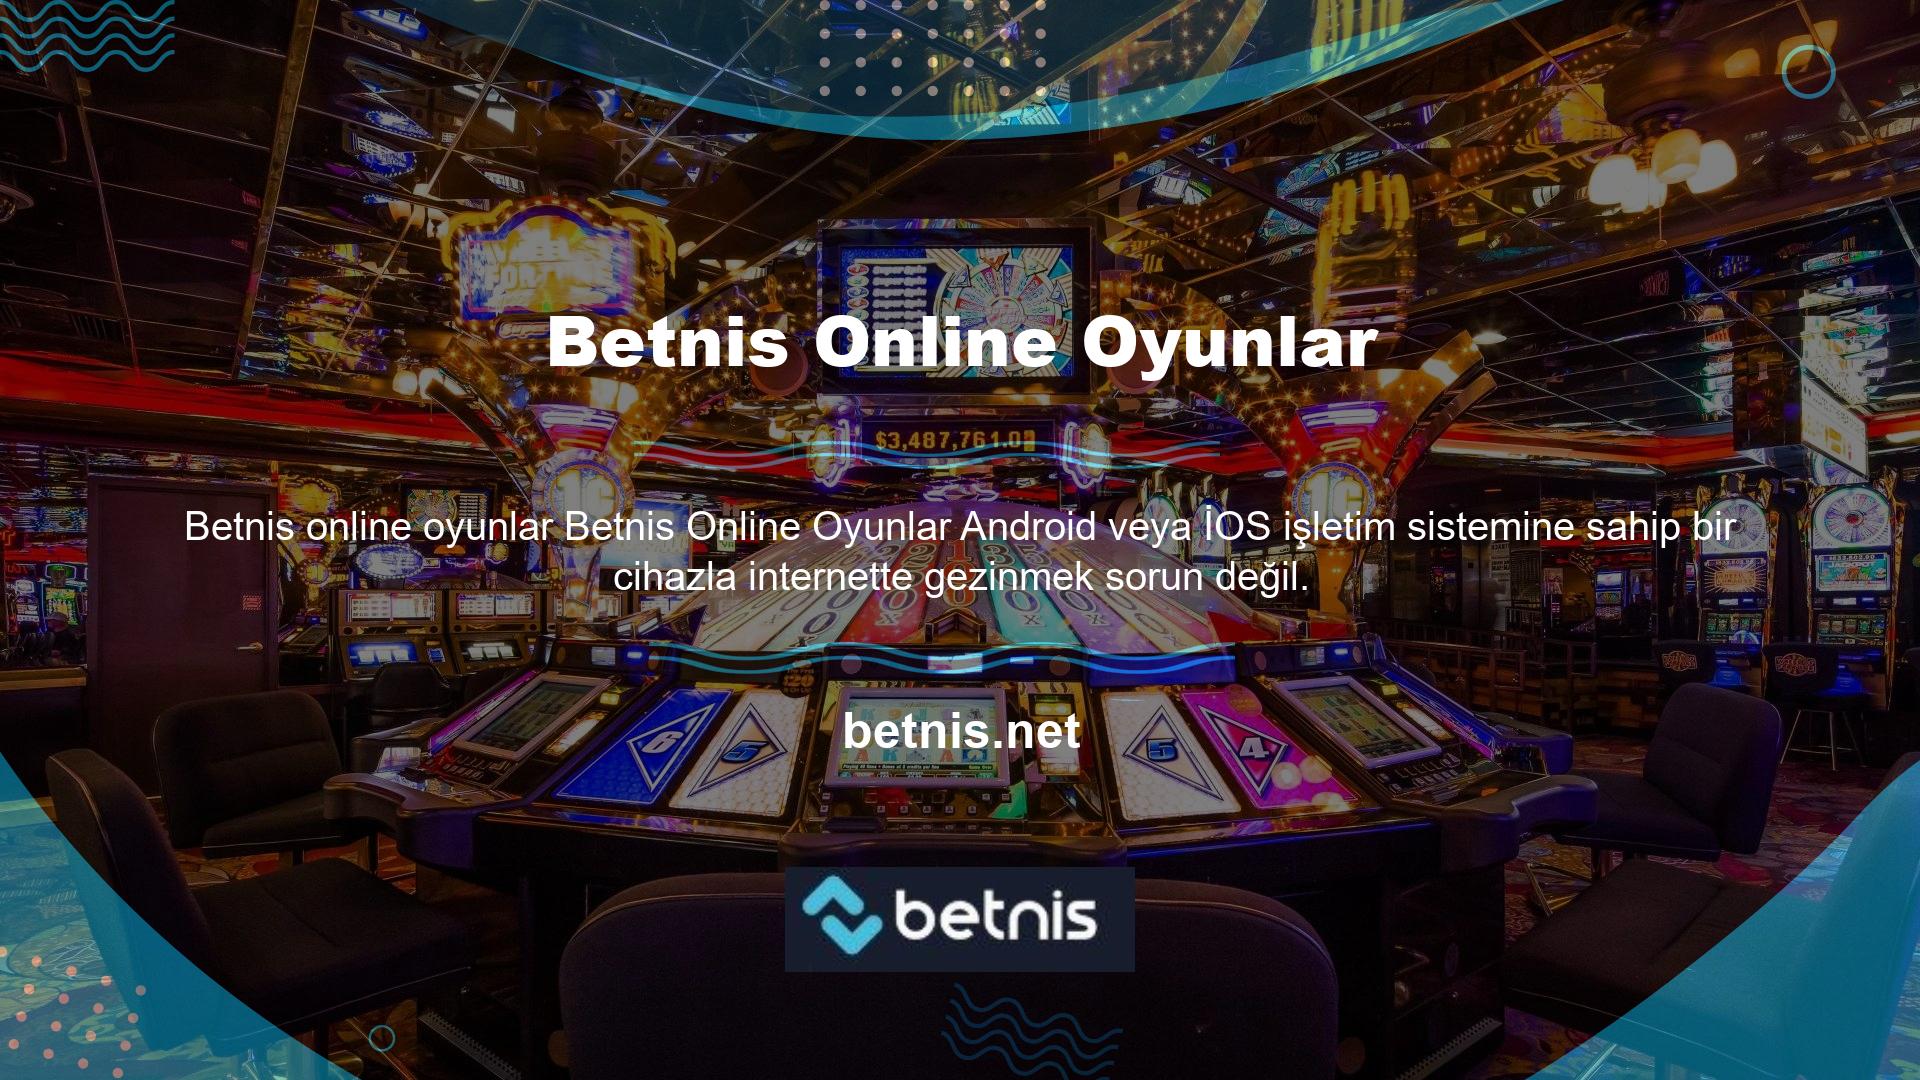 Online oyun dünyasının casino oyun sitesi Betnis bu casino oyunlarına yani casino oyunlarına özel bir bölüm açmamız gerekiyor